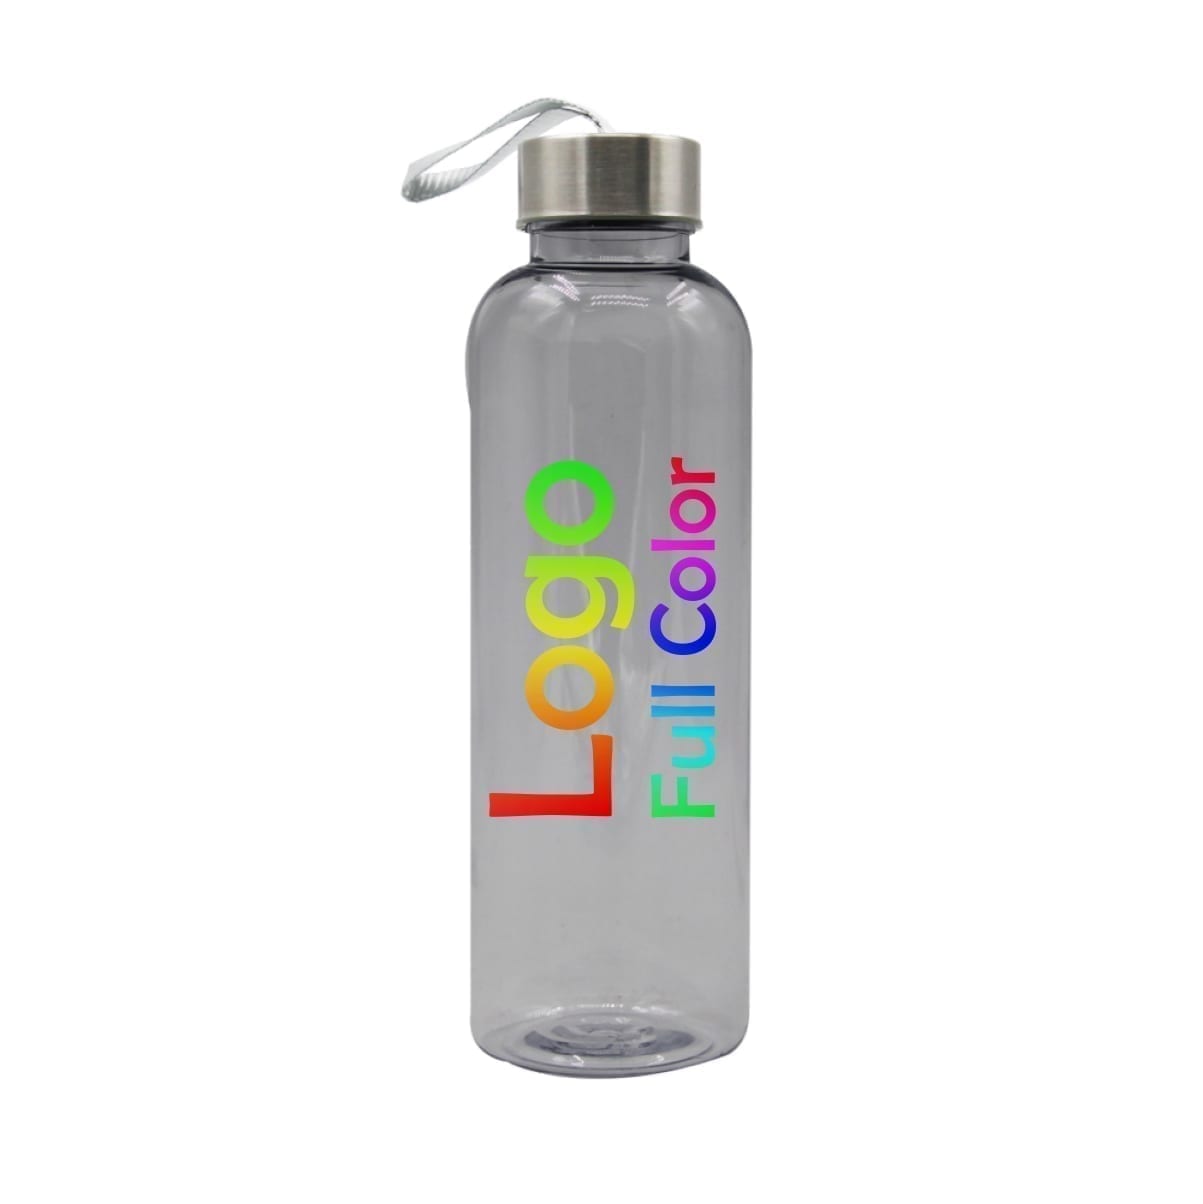 - botellas plásticas personalizadas